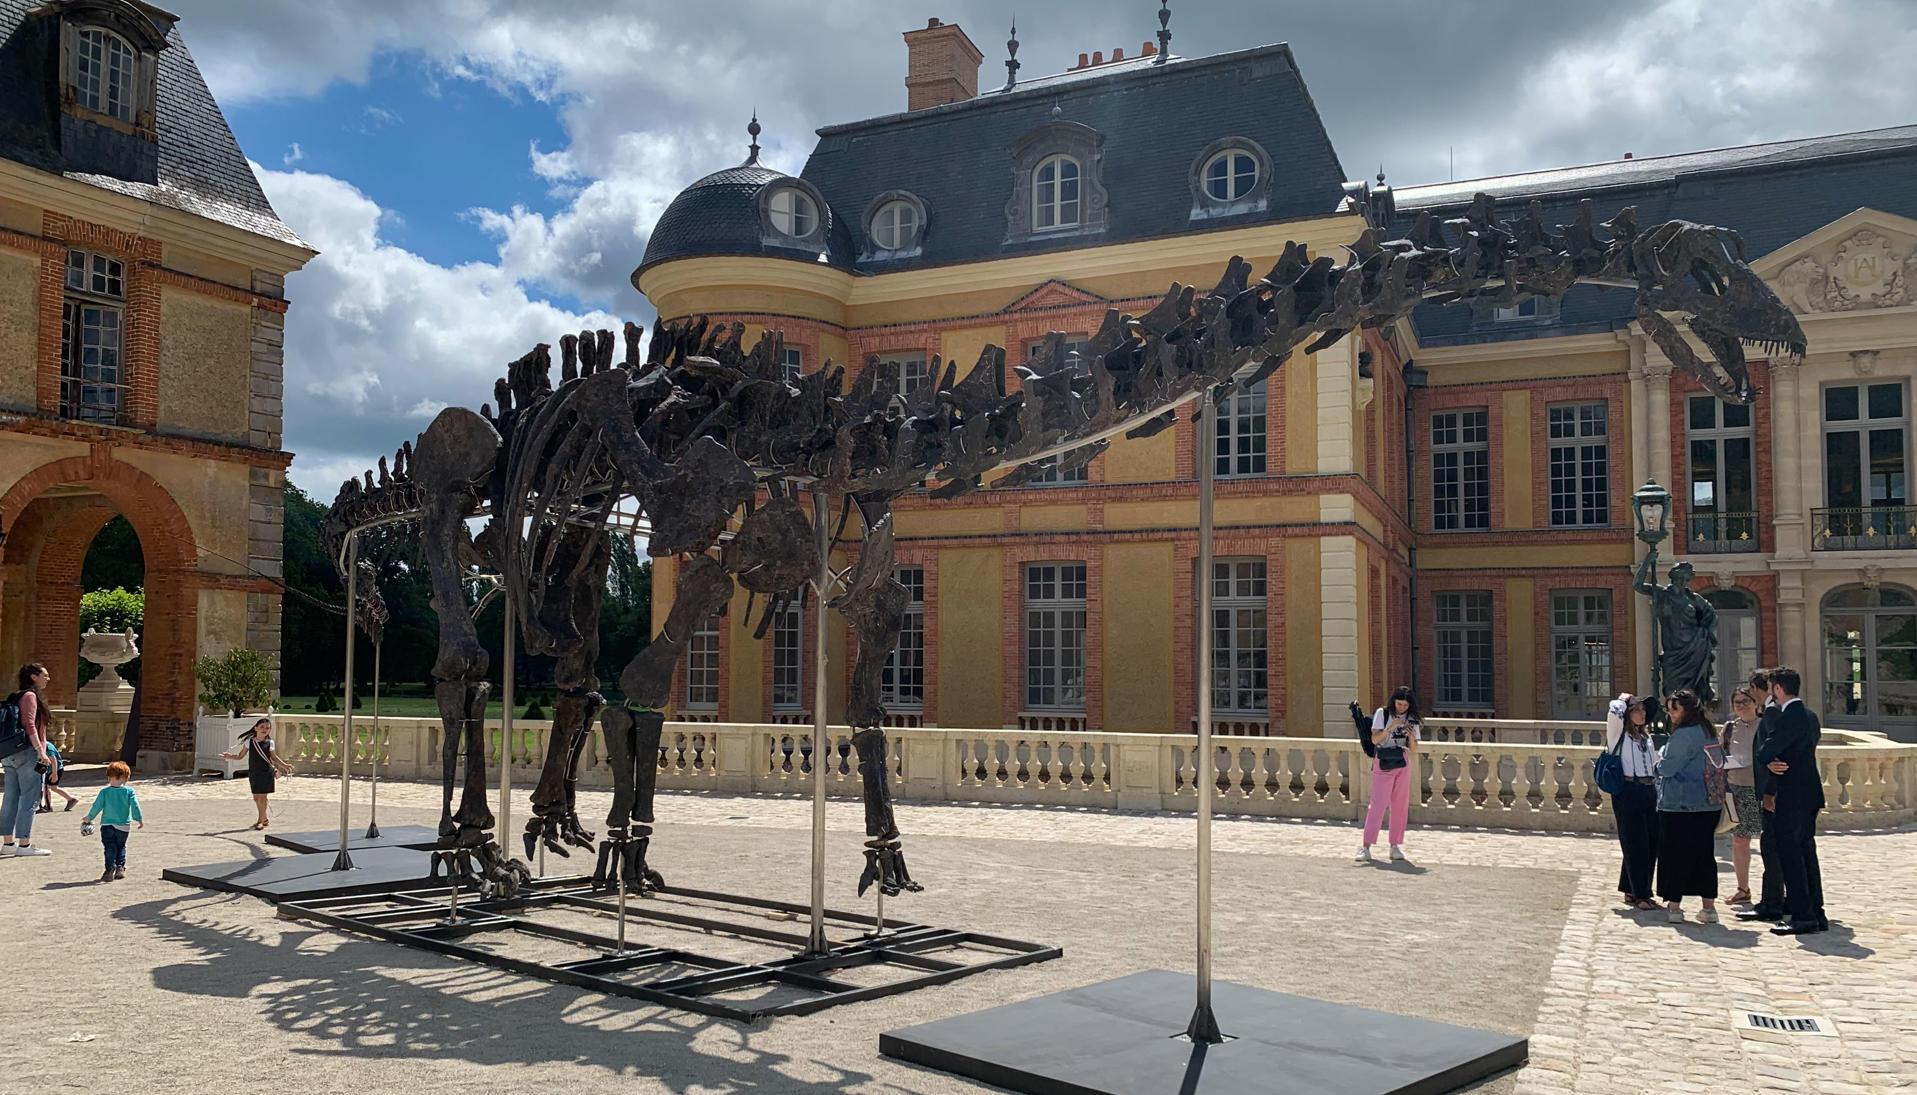 Vista del esqueleto de un Apatosaurio en el castillo de Dampierre en Dampierre-en-Yvelines, Francia.